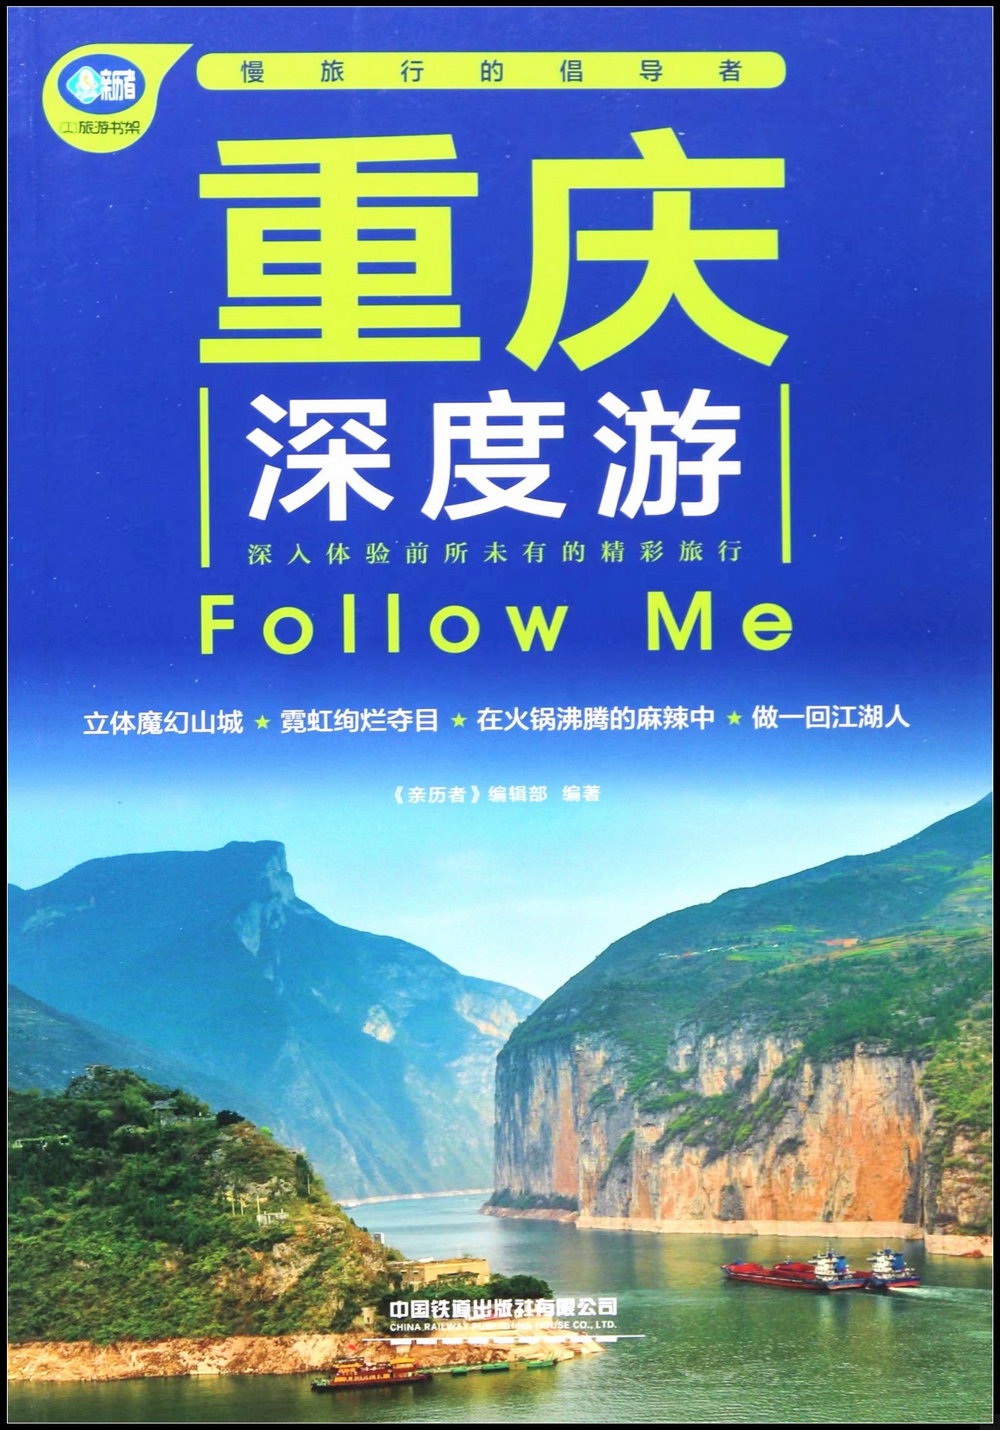 重慶深度游Follow Me